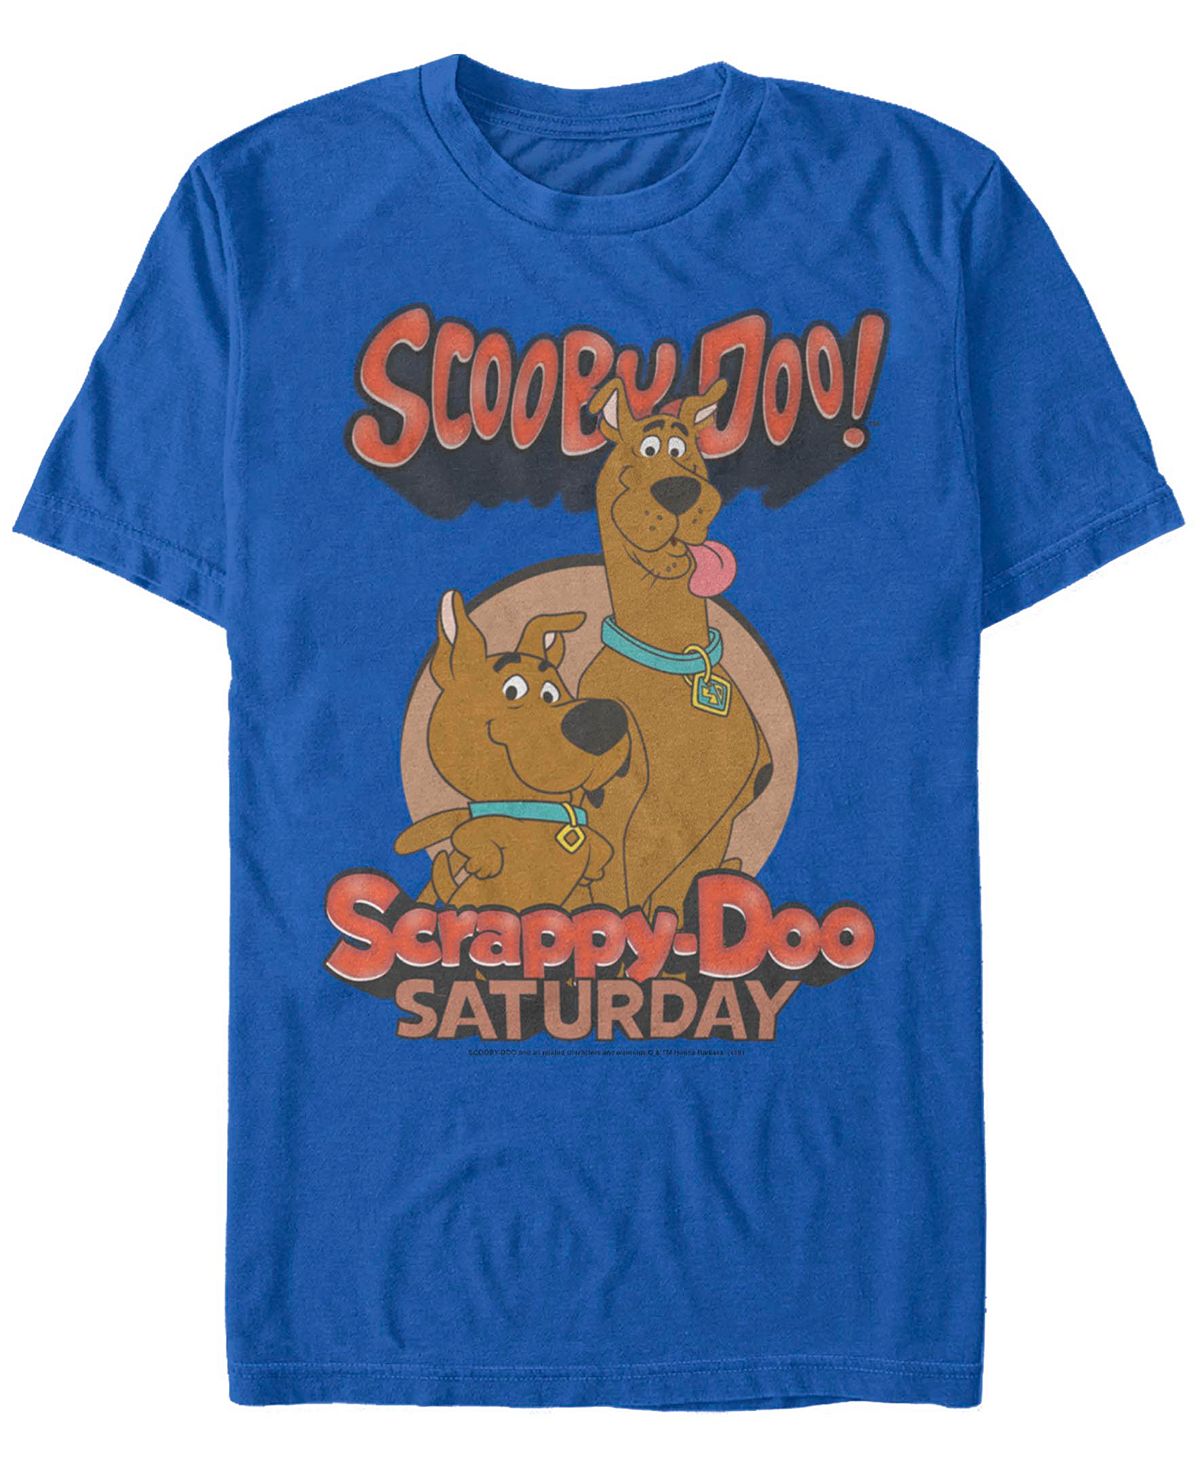 Мужская футболка с коротким рукавом Scooby Doo Saturday Doos Fifth Sun мужская футболка с коротким рукавом scaredy shaggy zoinks scooby doo fifth sun черный